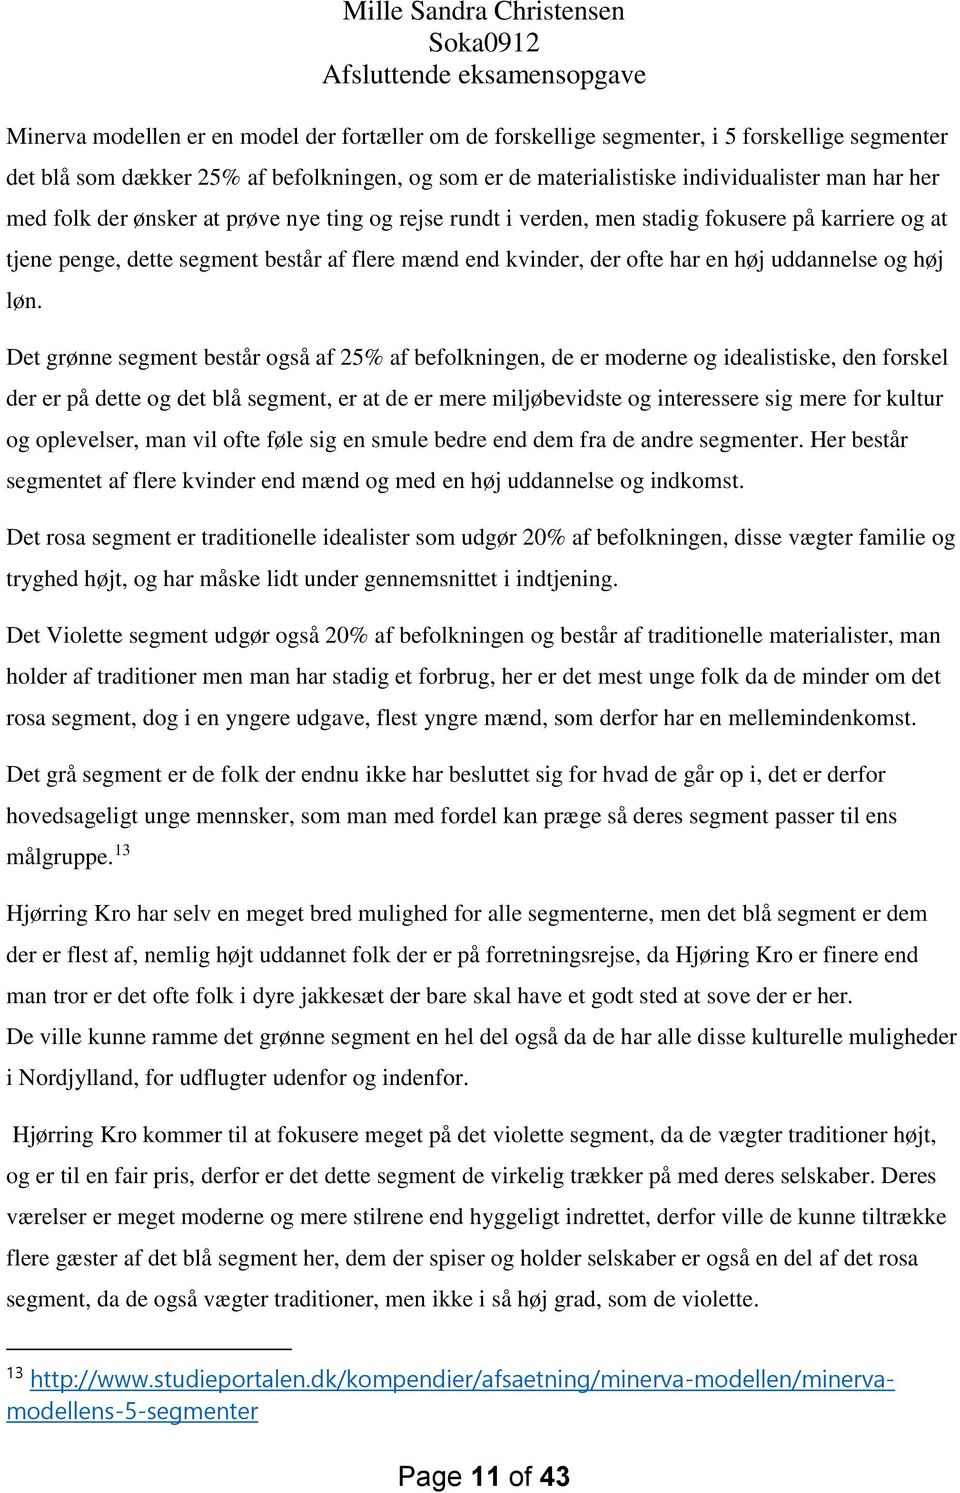 Mille Sandra Christensen Soka0912 Afsluttende eksamensopgave - PDF ...